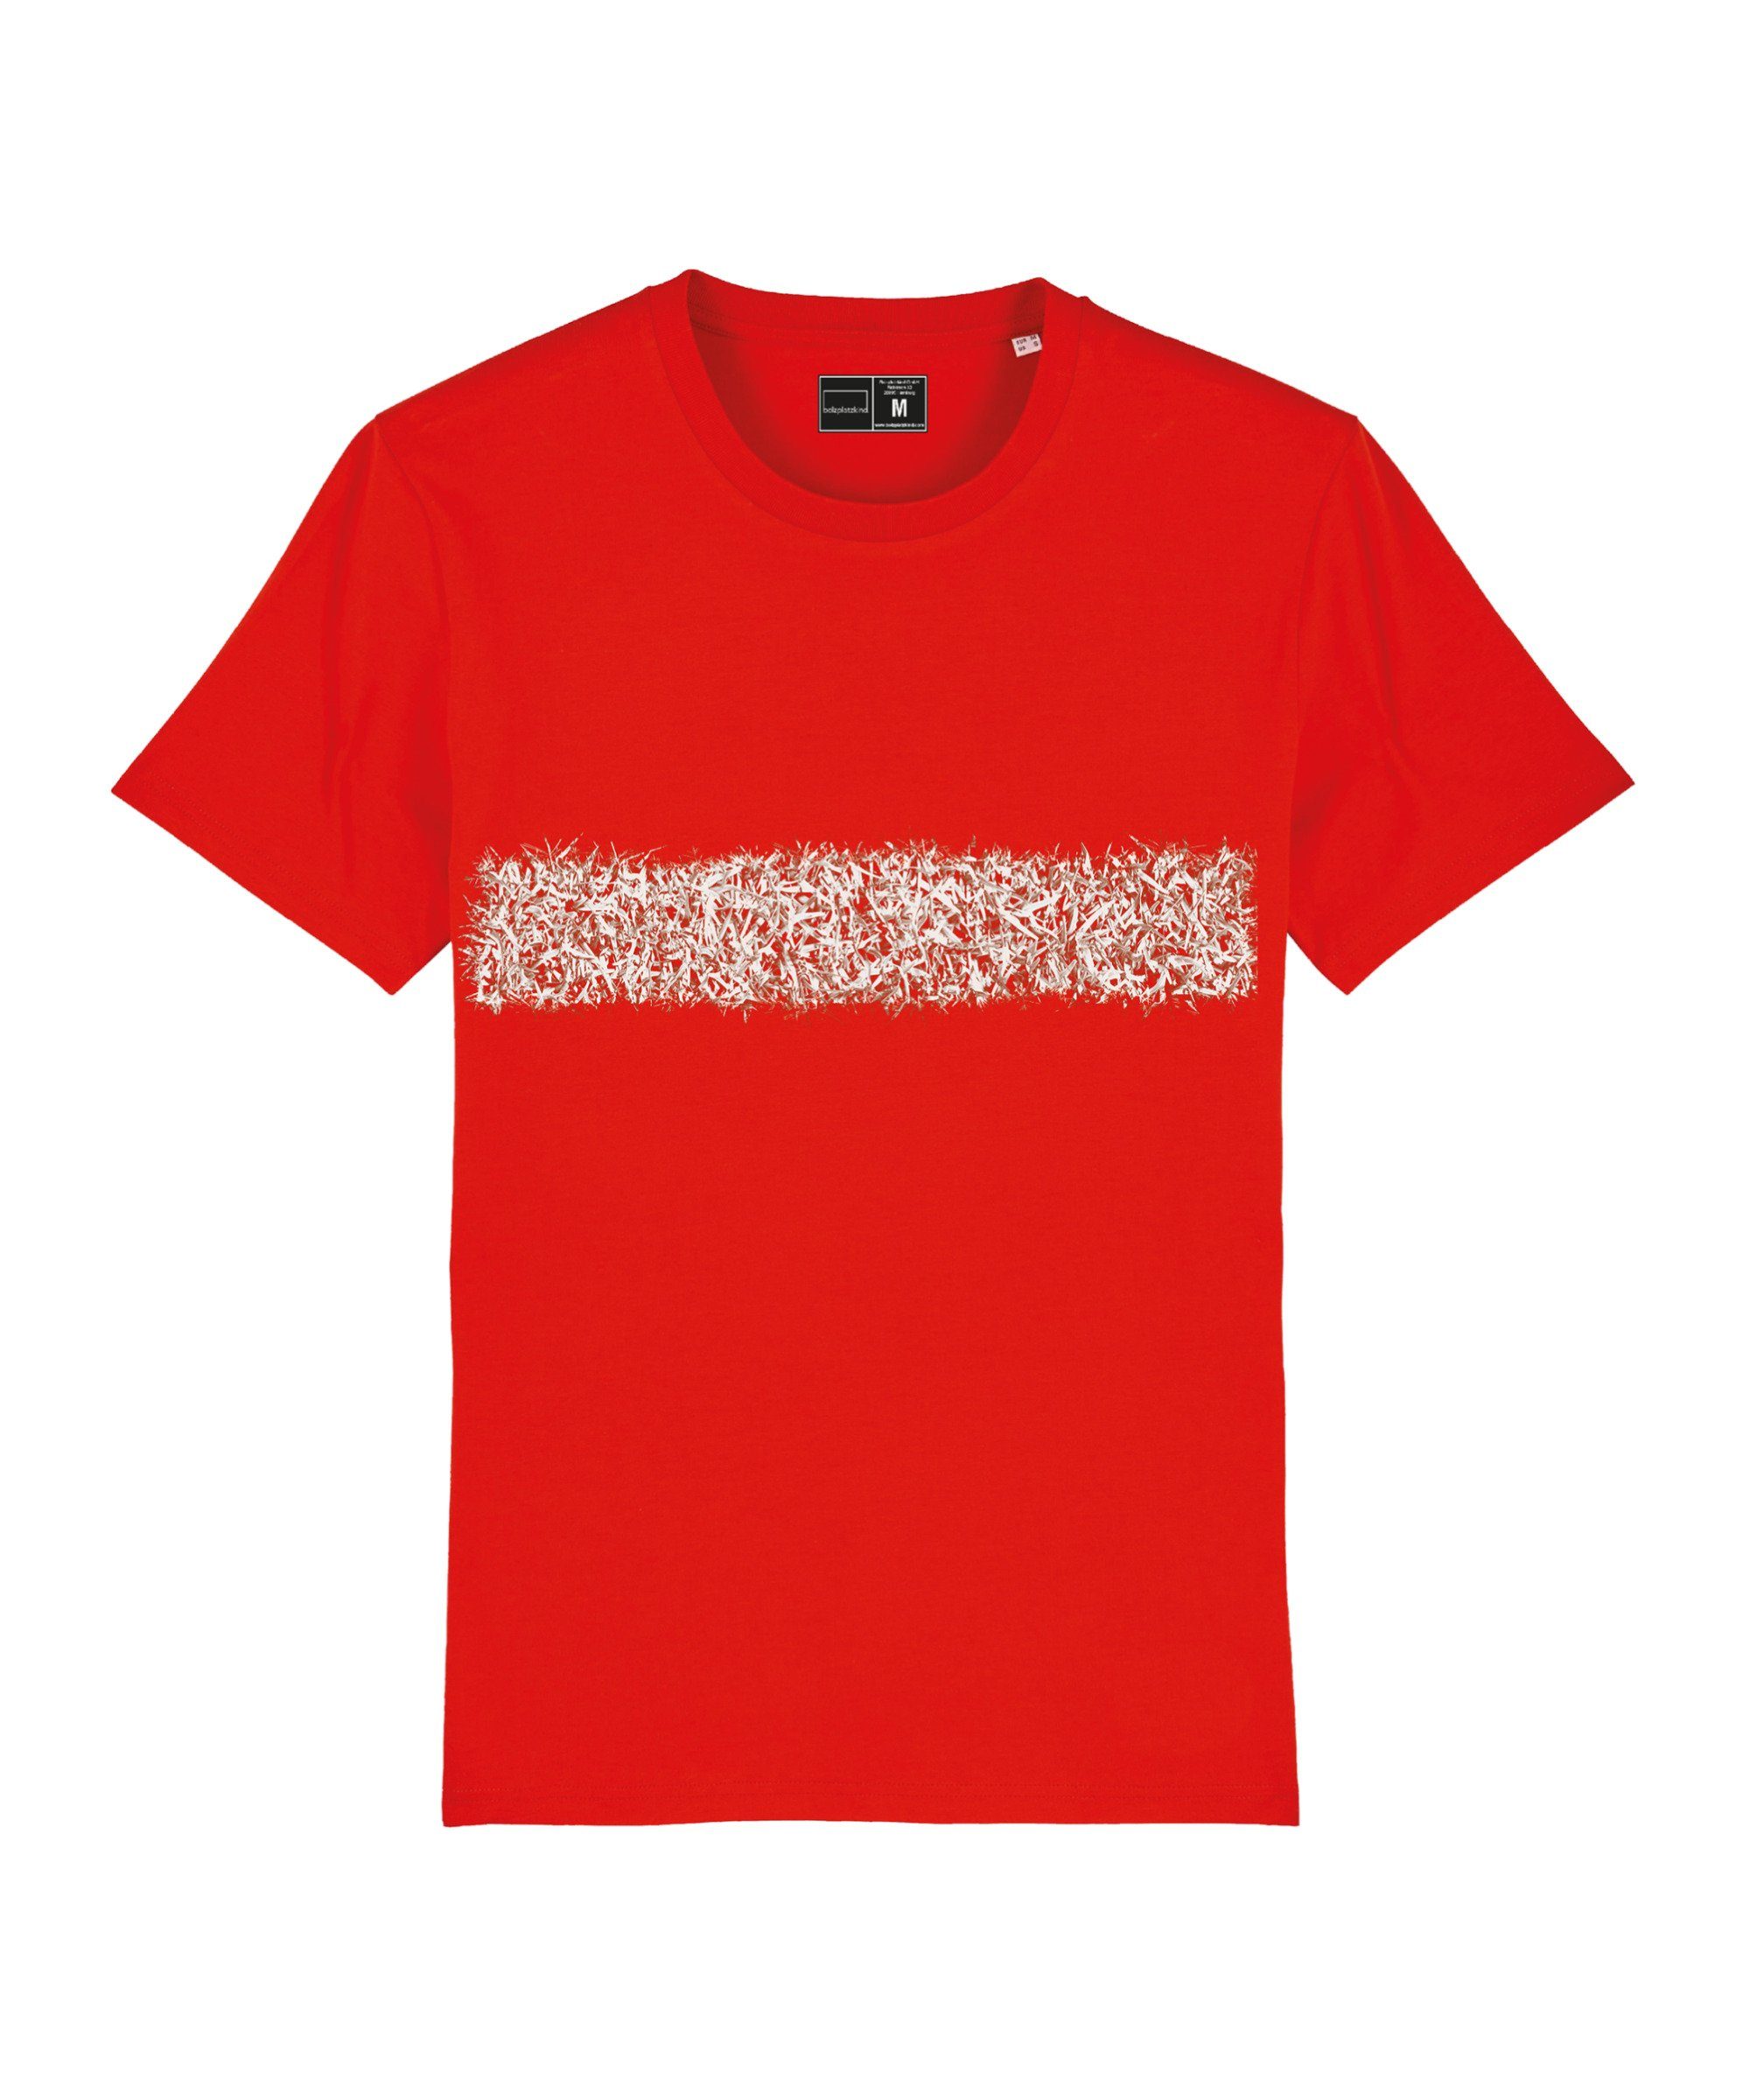 Bolzplatzkind T-Shirt "Line-Up" rot T-Shirt Produkt Nachhaltiges